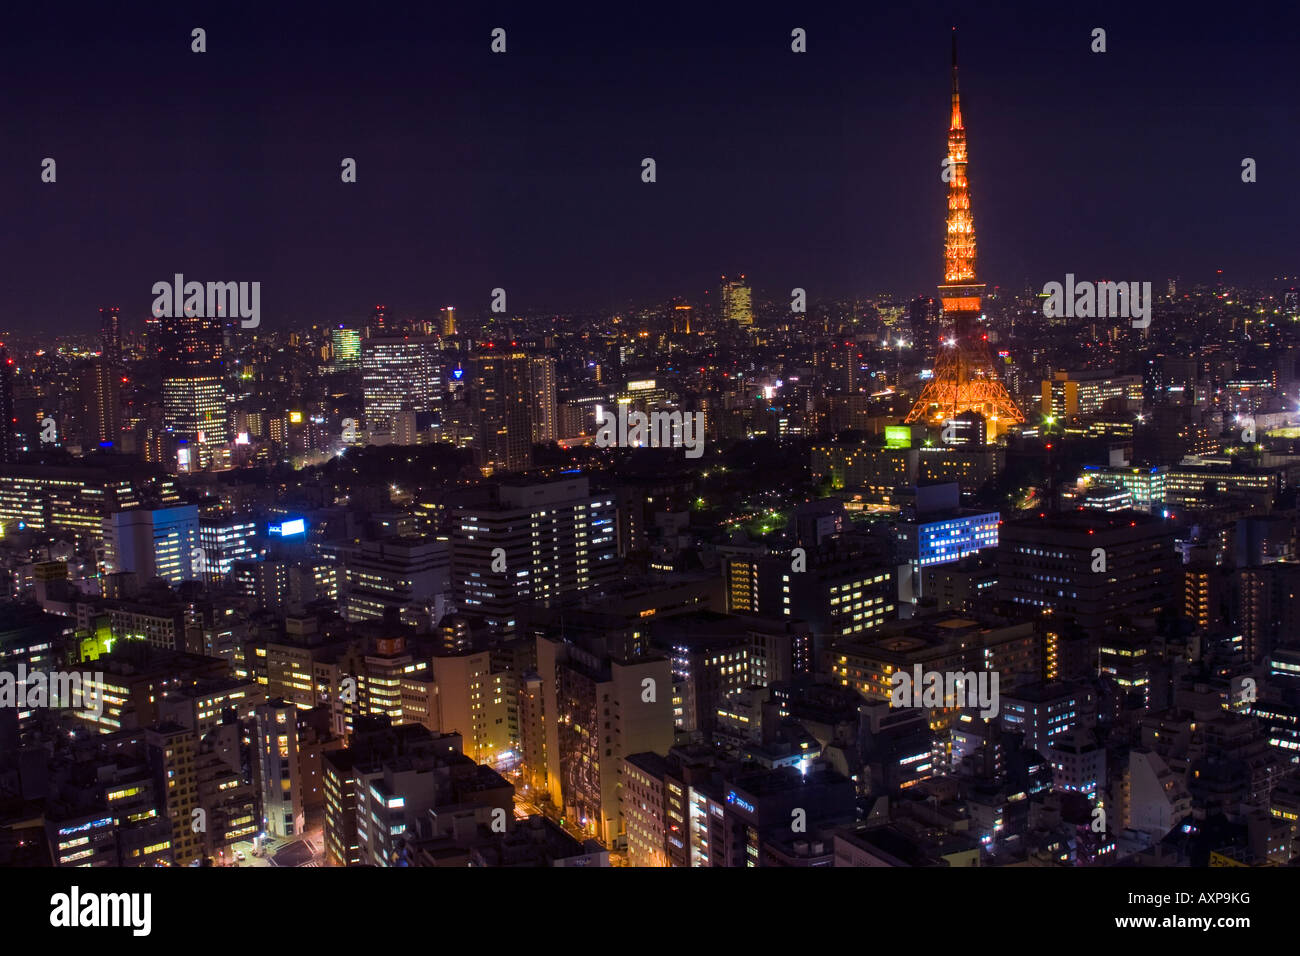 Vue aérienne de la Tour de Tokyo et les bâtiments de l'arrondissement de Roppongi la ville de Tokyo dans la nuit Banque D'Images